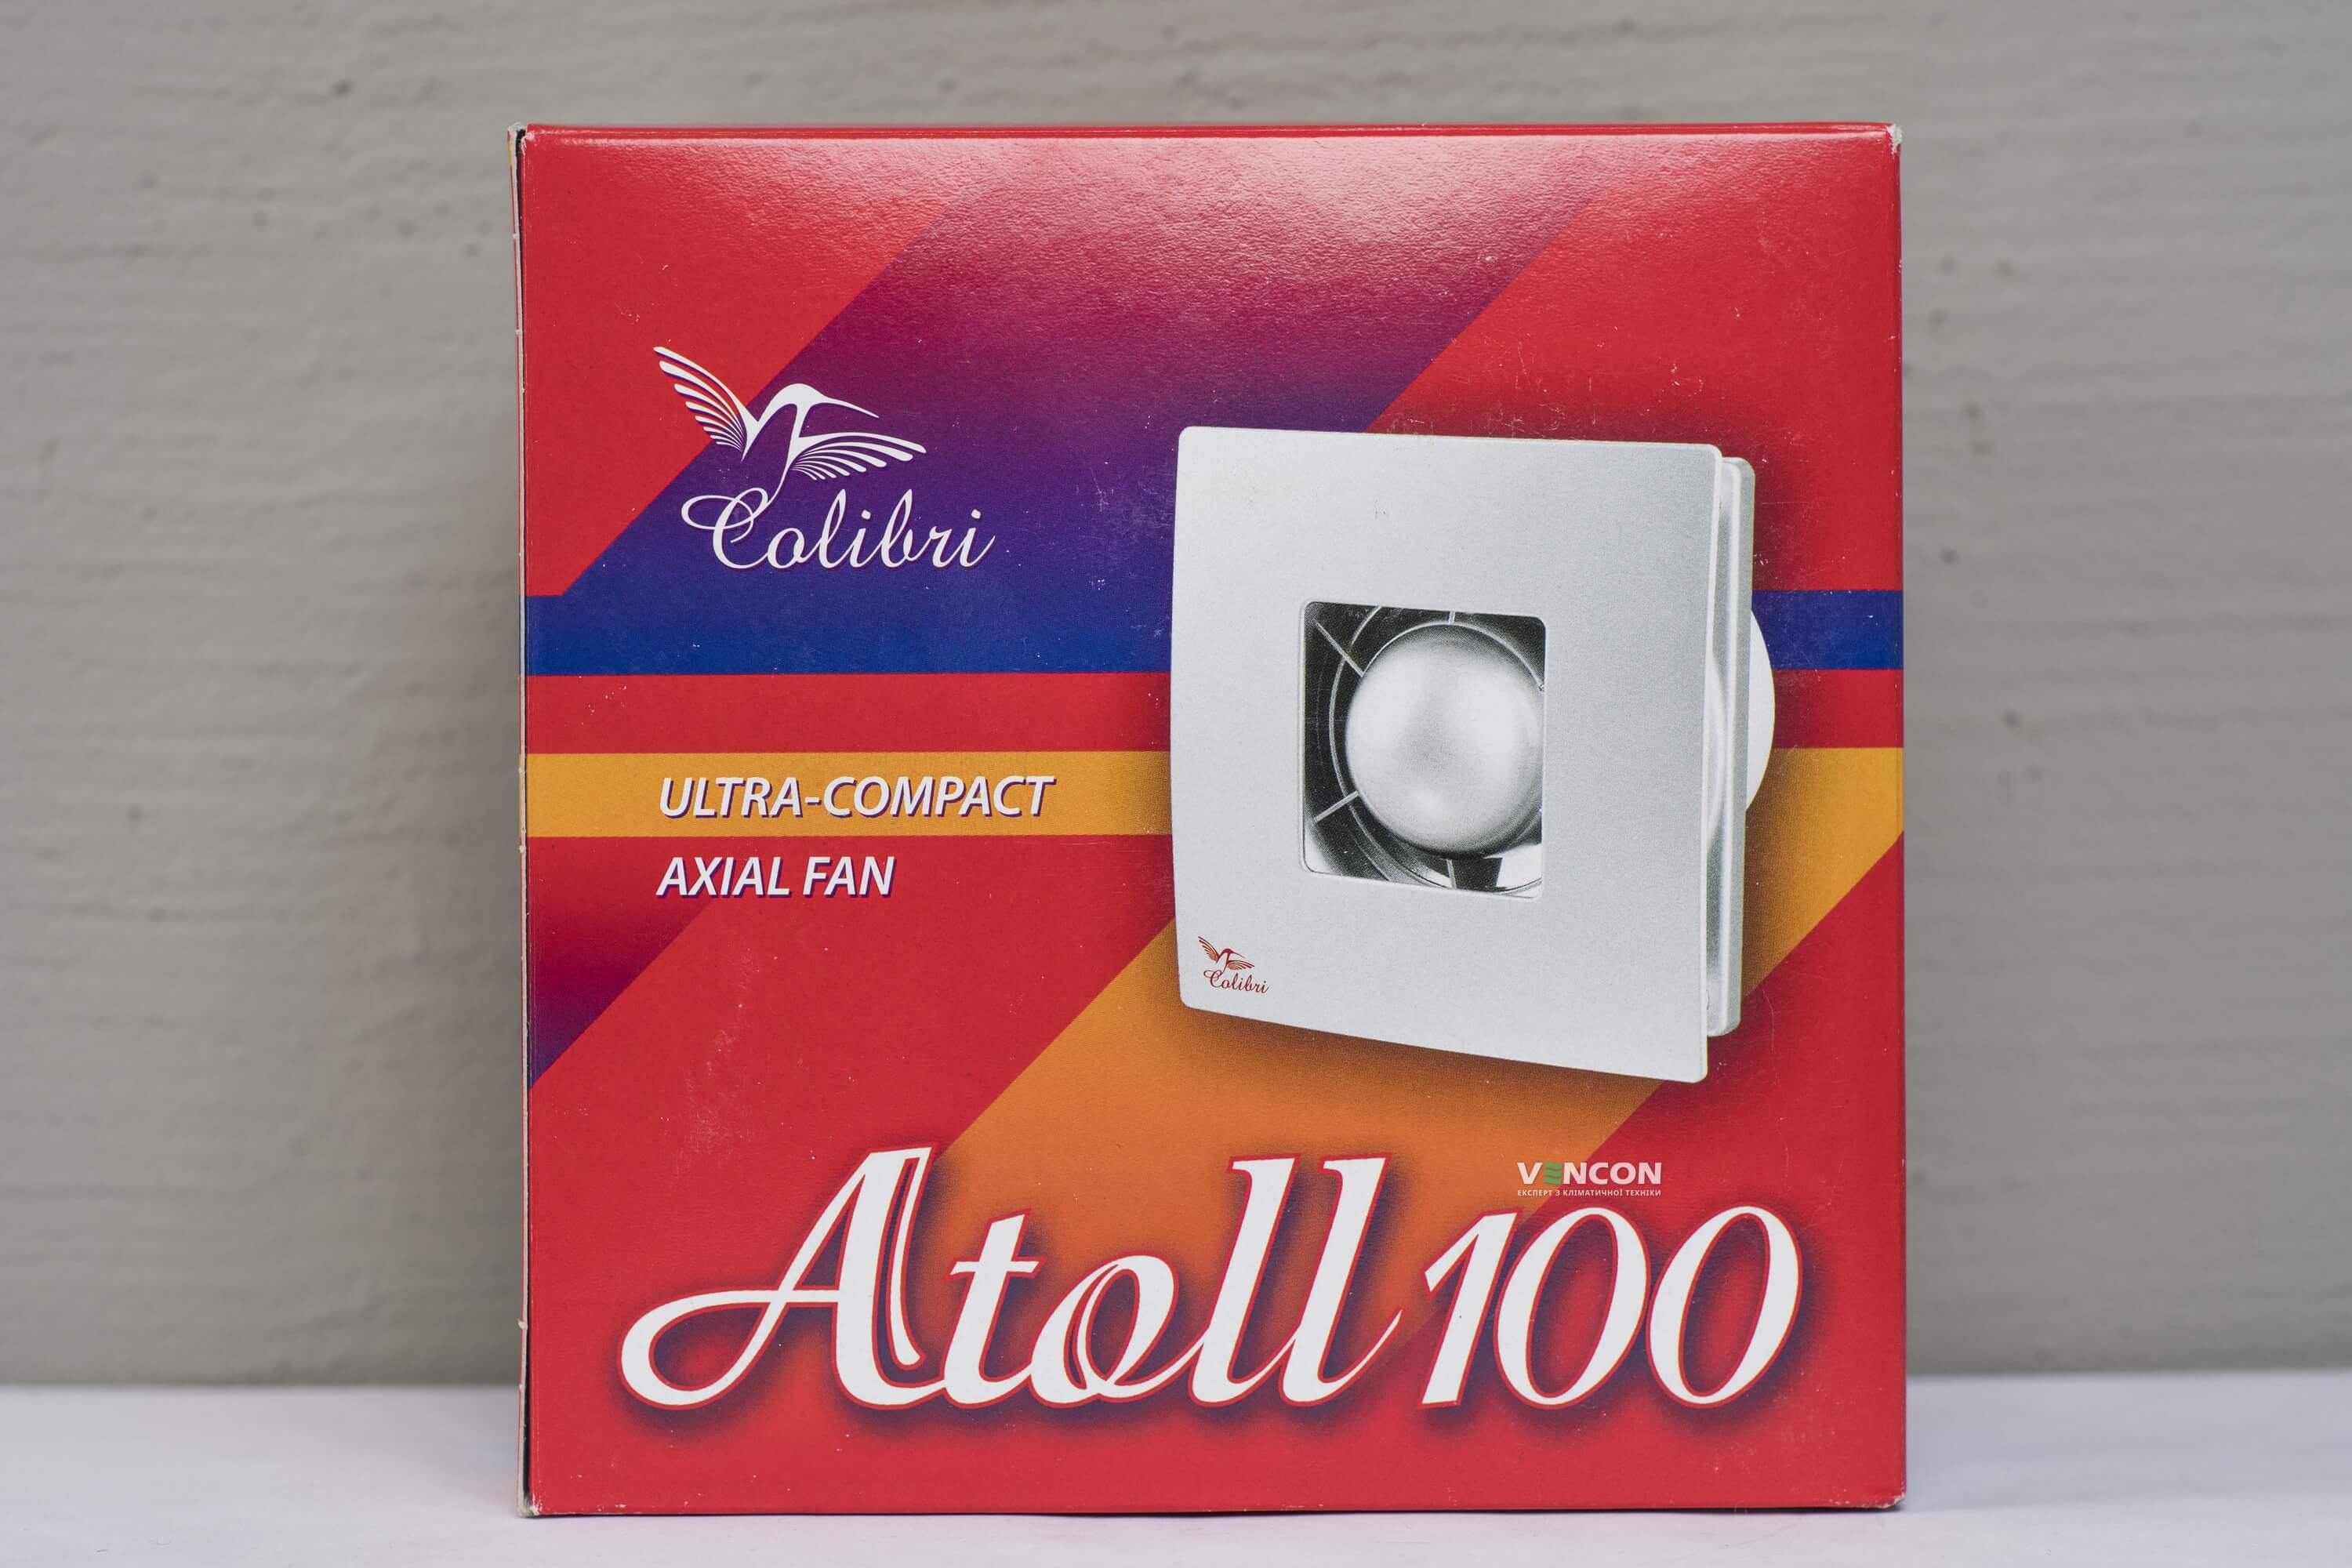 Вытяжной вентилятор Colibri Atoll 100 цена 580.00 грн - фотография 2